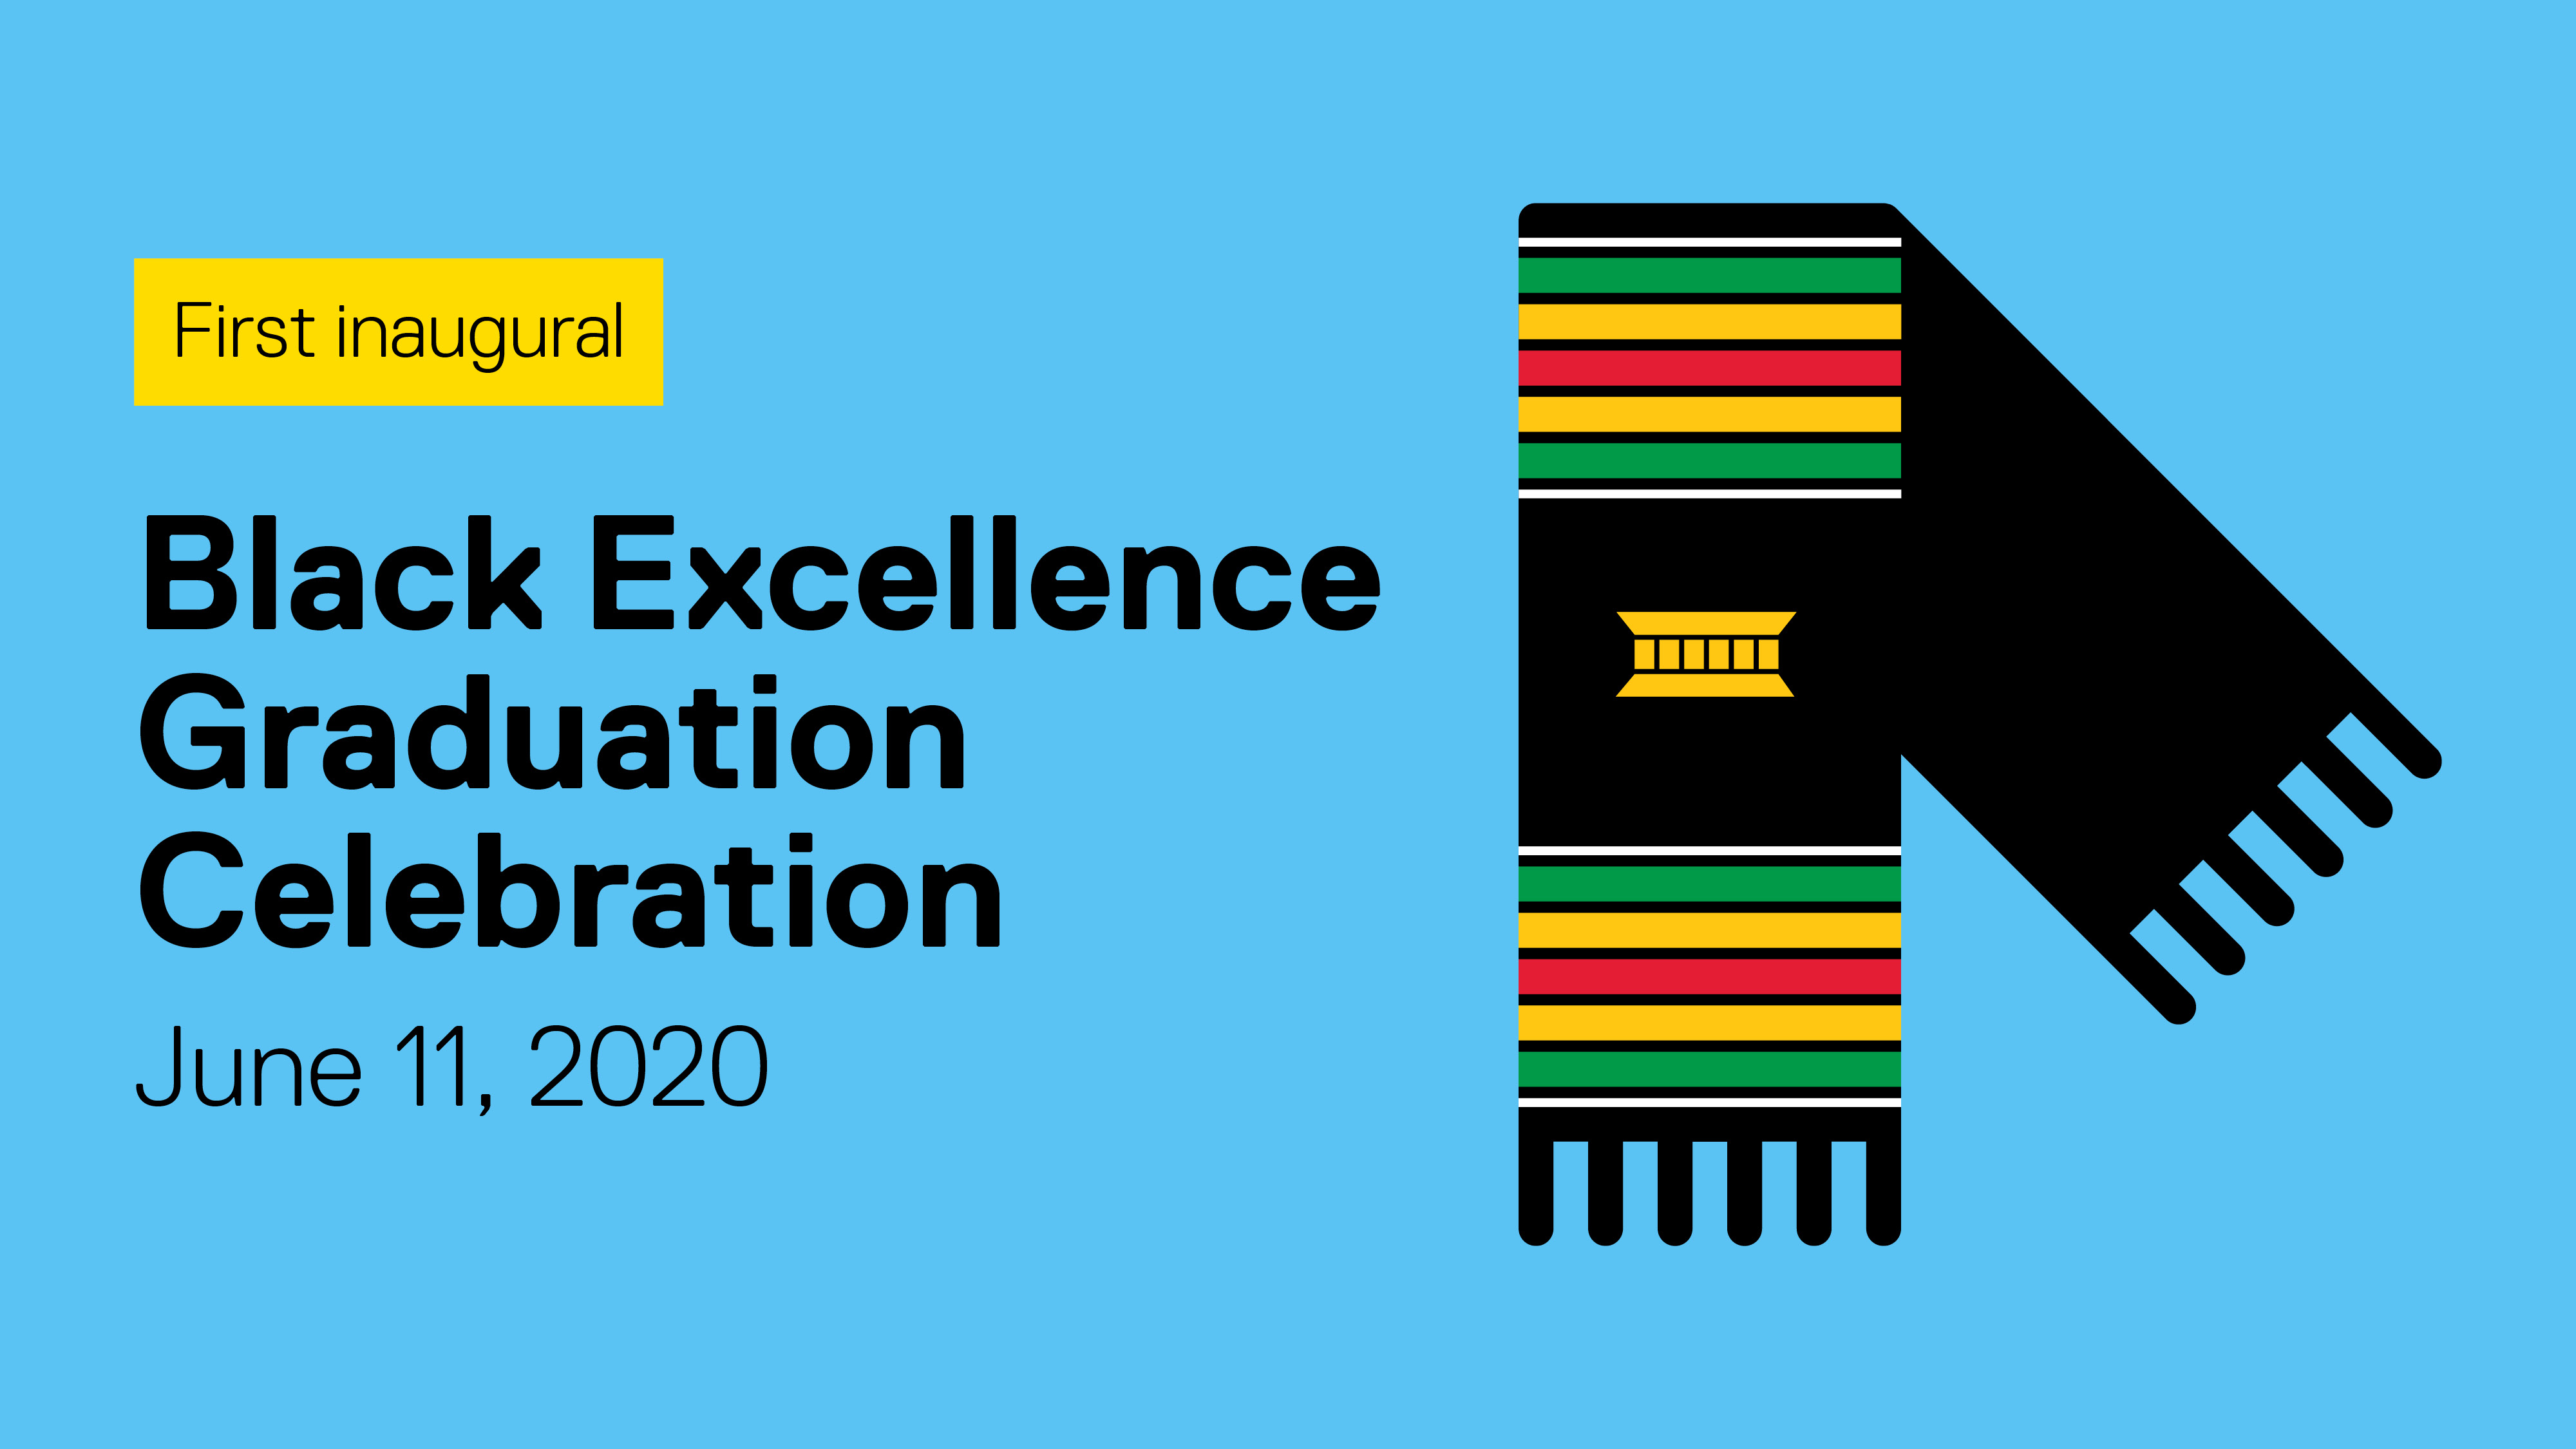 Black Excellence Graduation Celebration, June 11, 2020